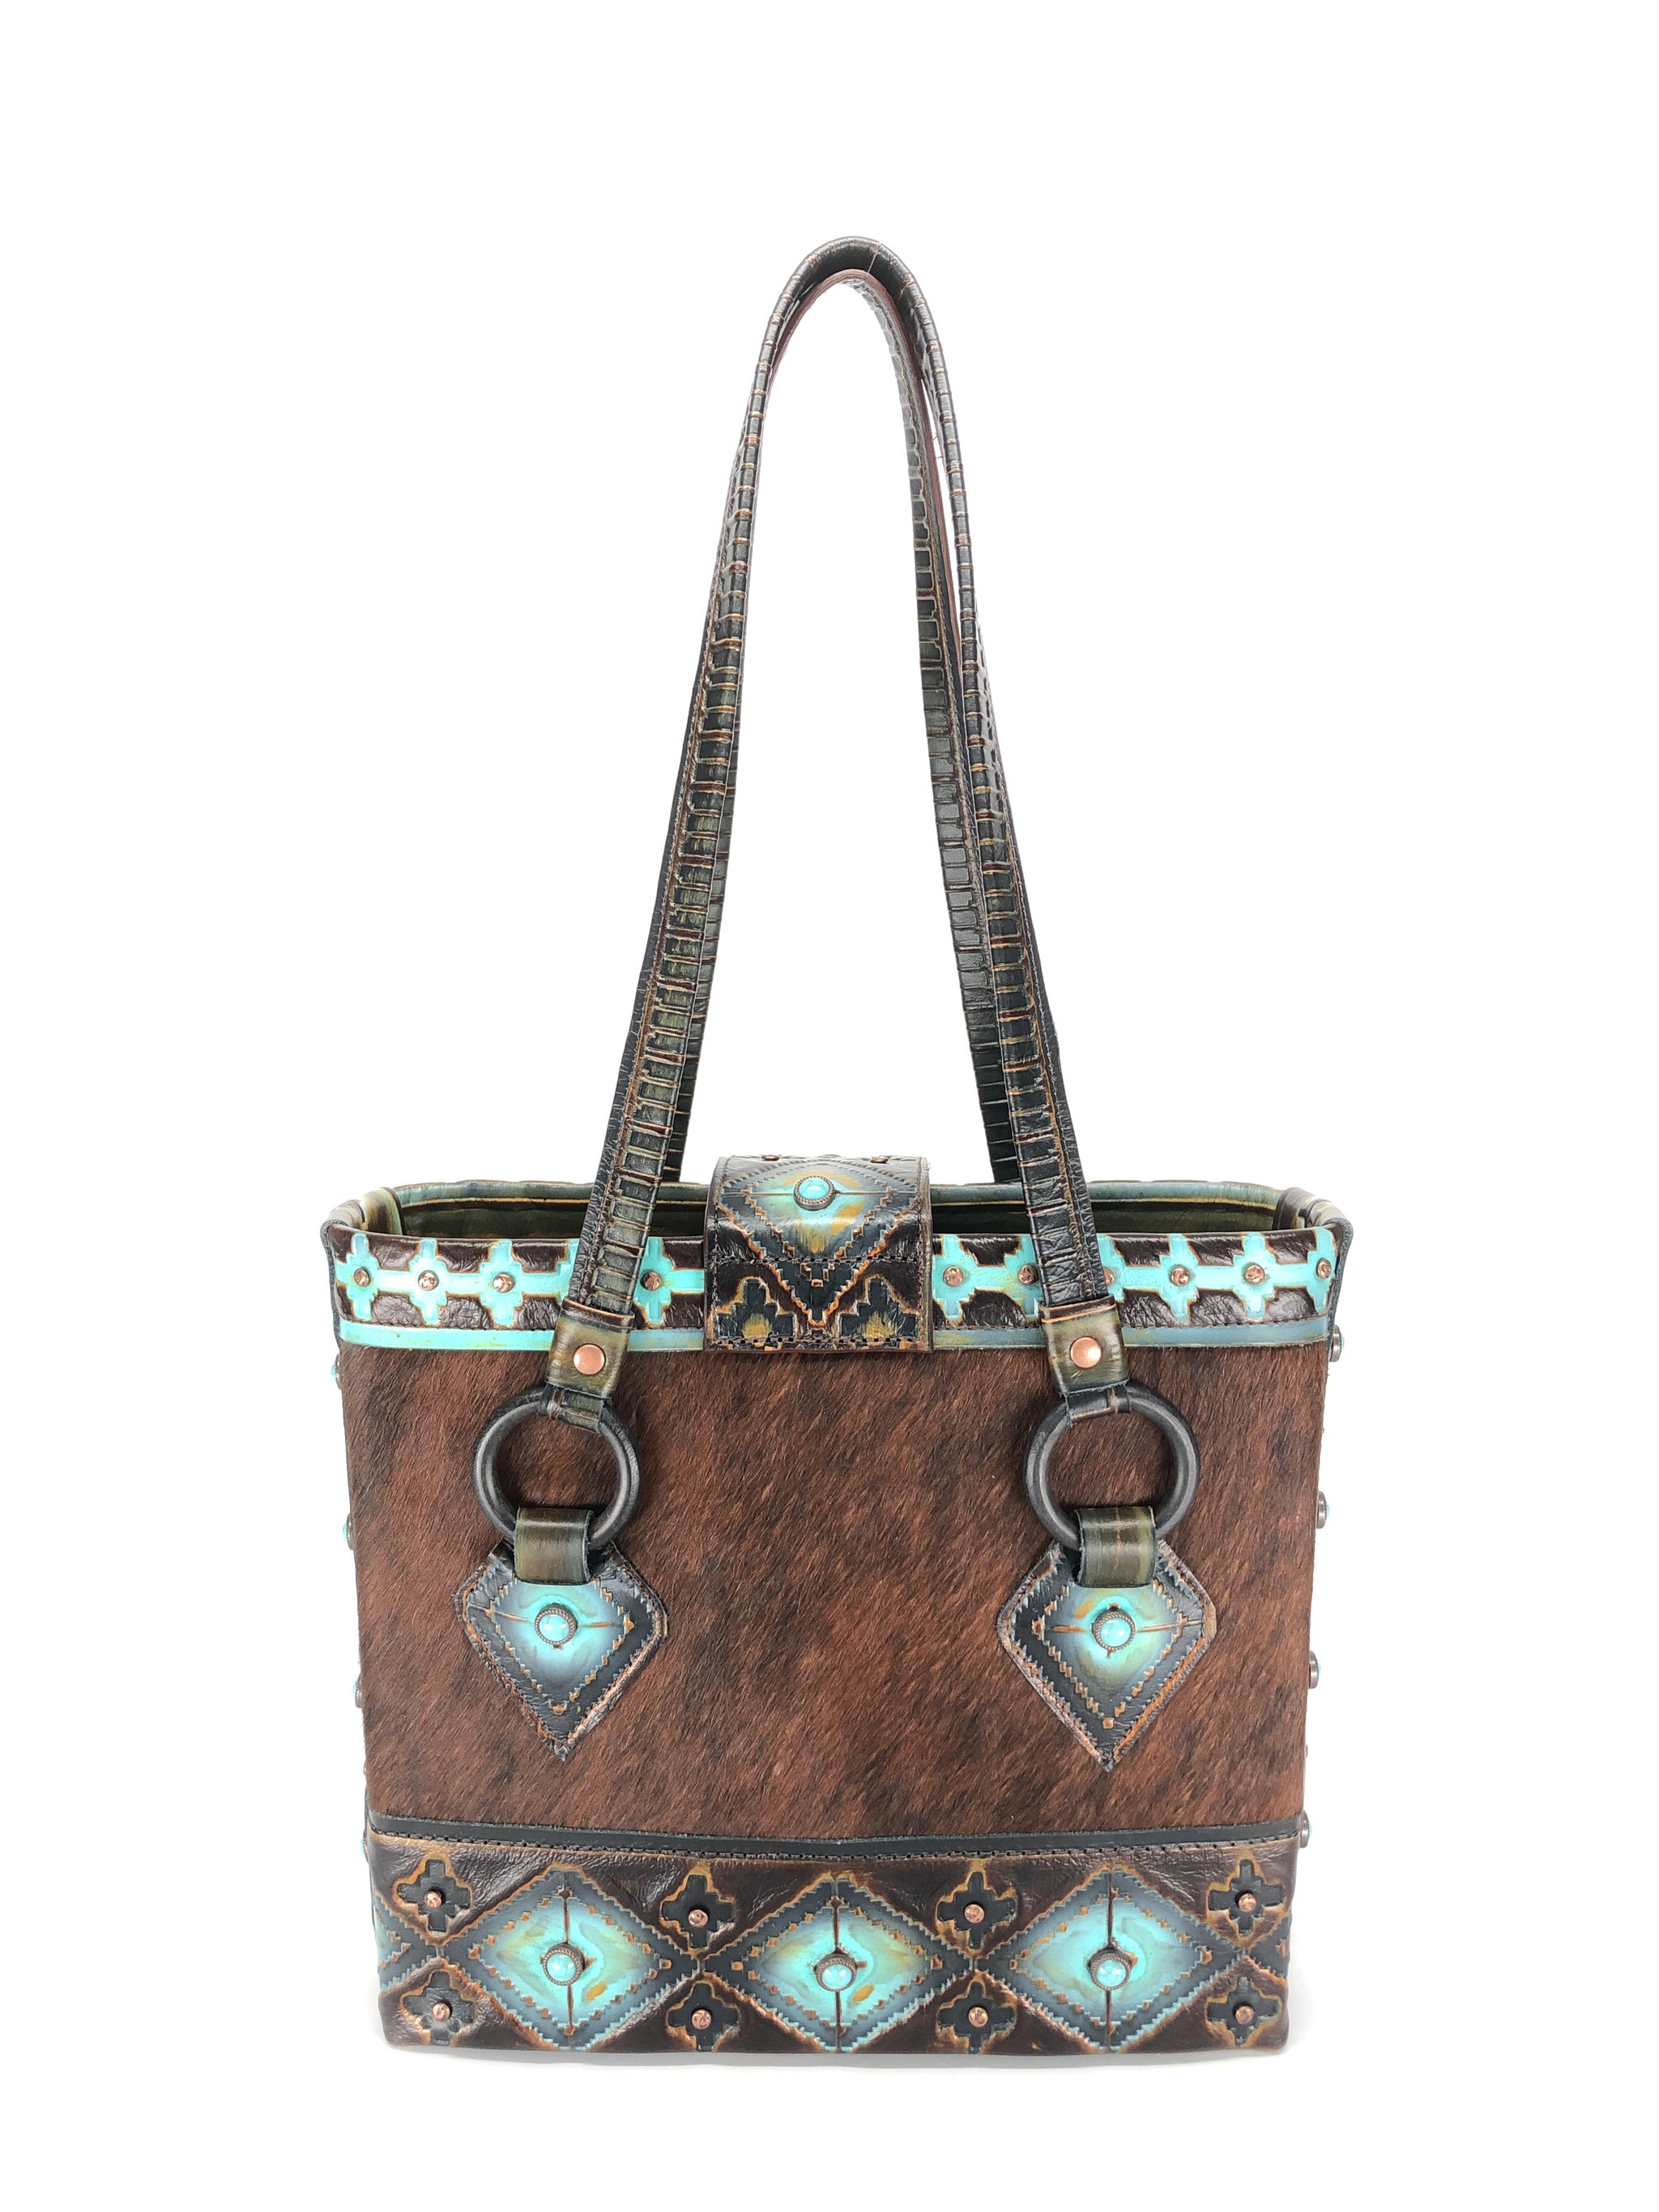 Leather Tote Bag, best designer tote bag for travel